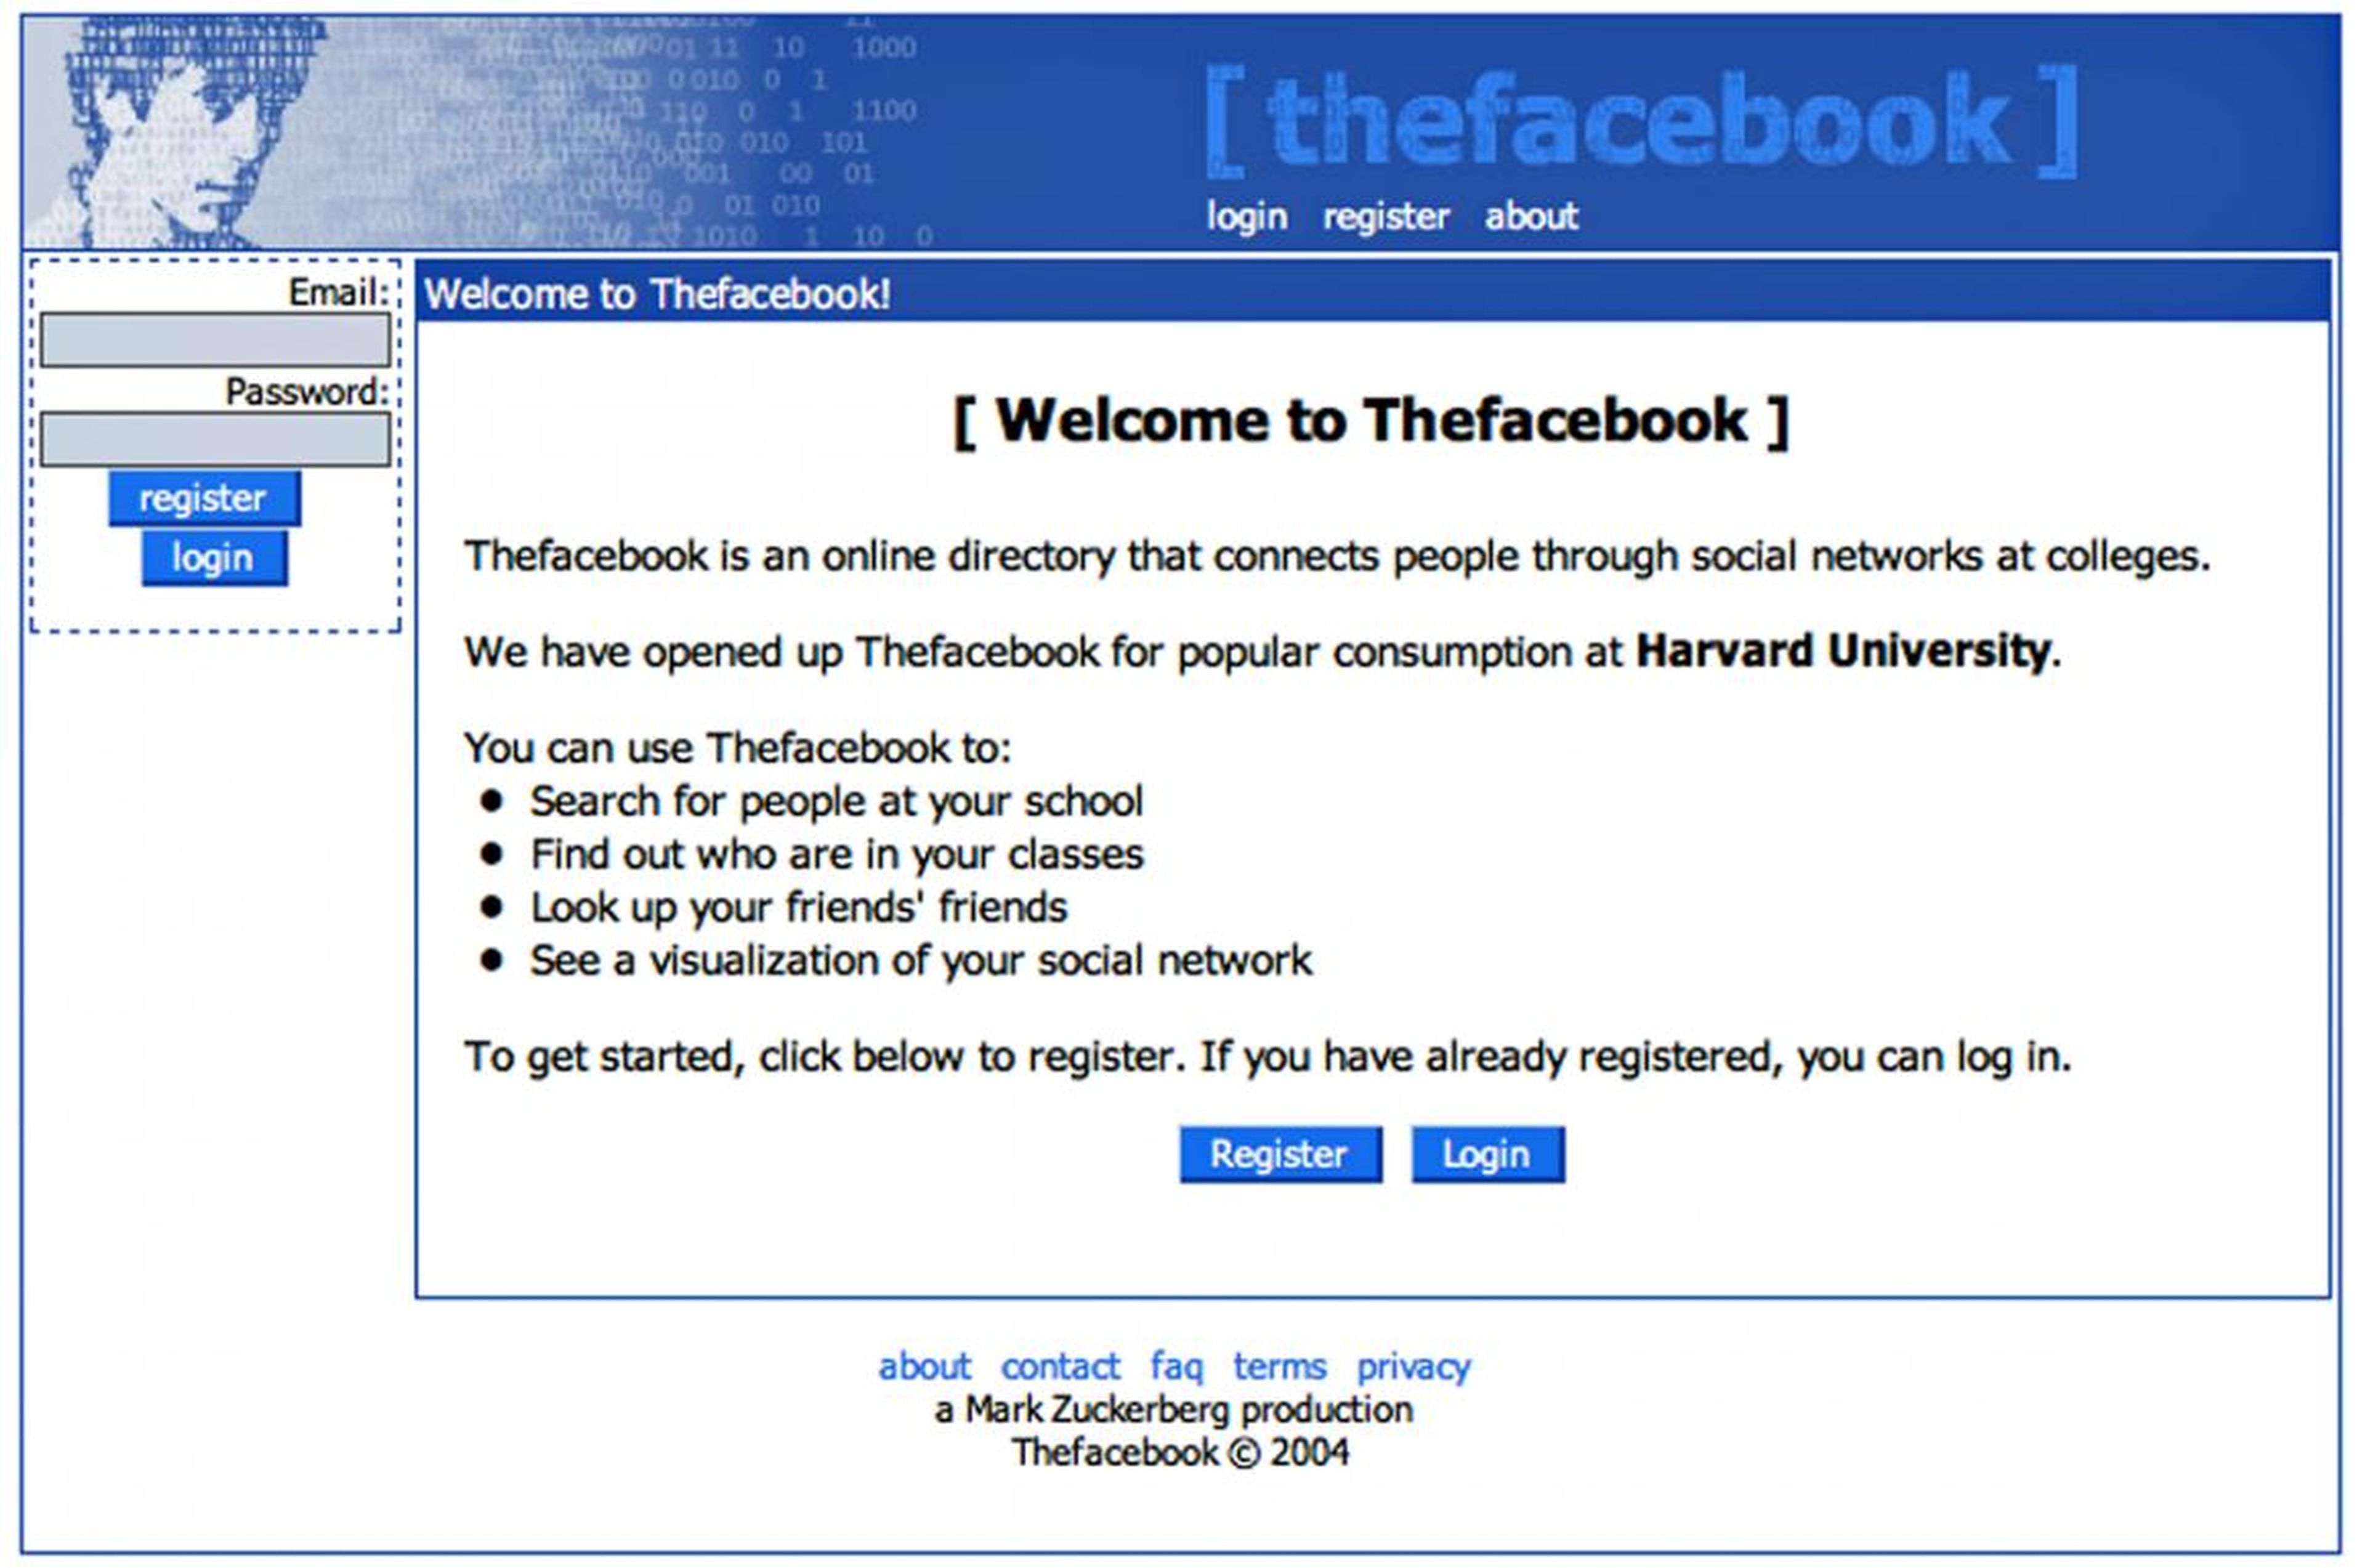 Sin dejarse intimidar por la debacle de Facemash, Zuckerberg lanzó The Facebook el 4 de febrero de 2004.